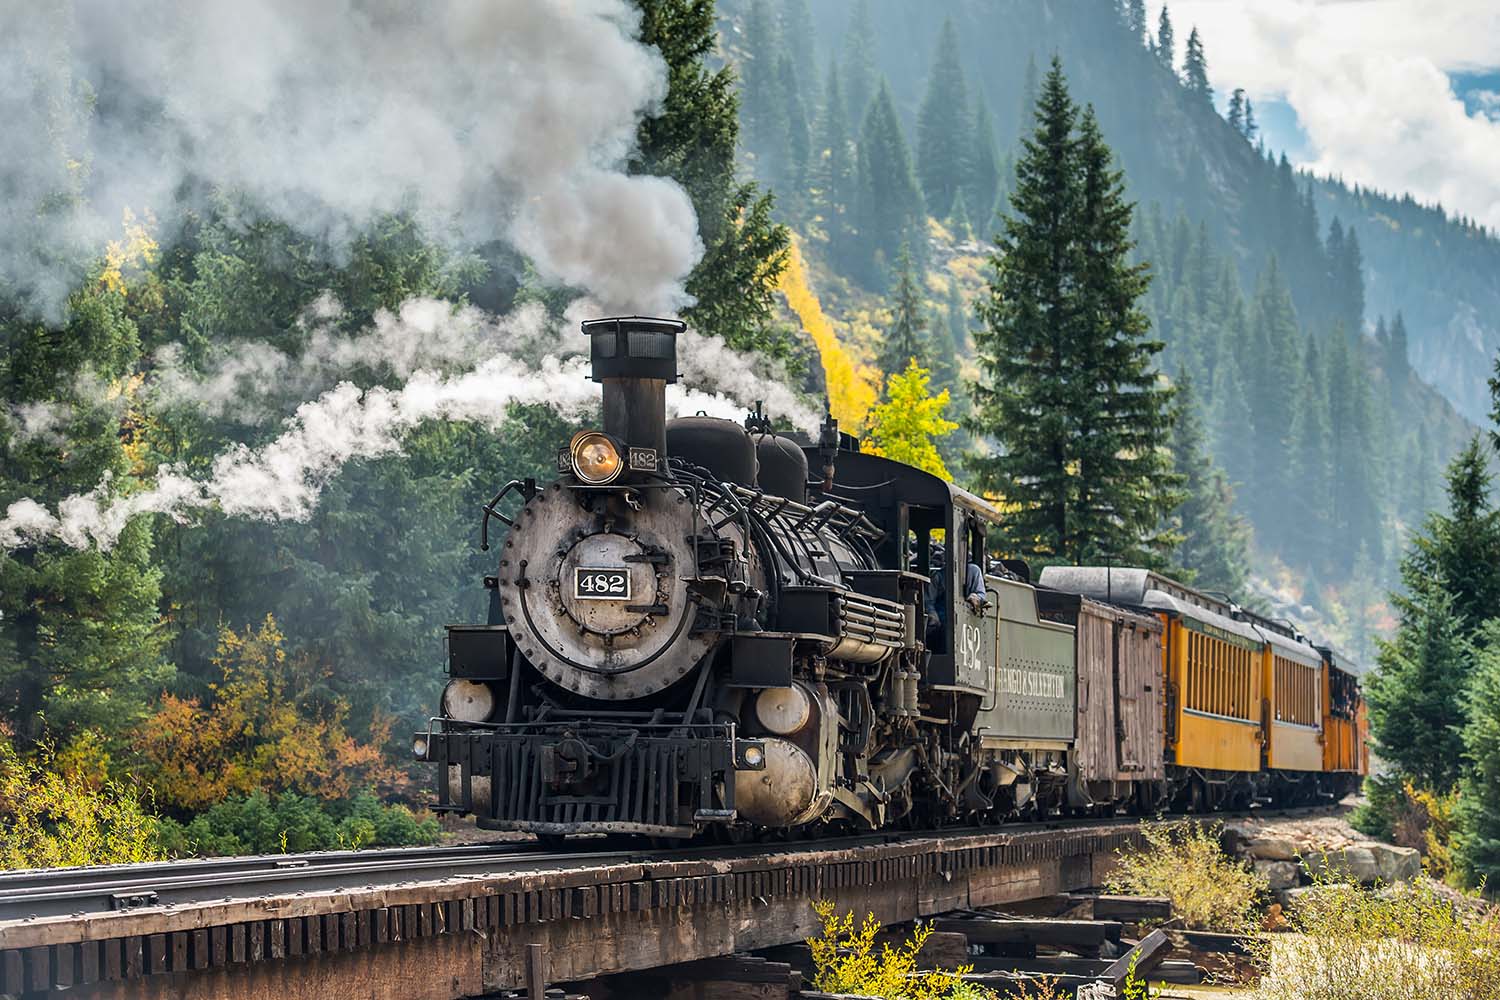 Restored steam train of Durango & Silverton in Colorado, USA